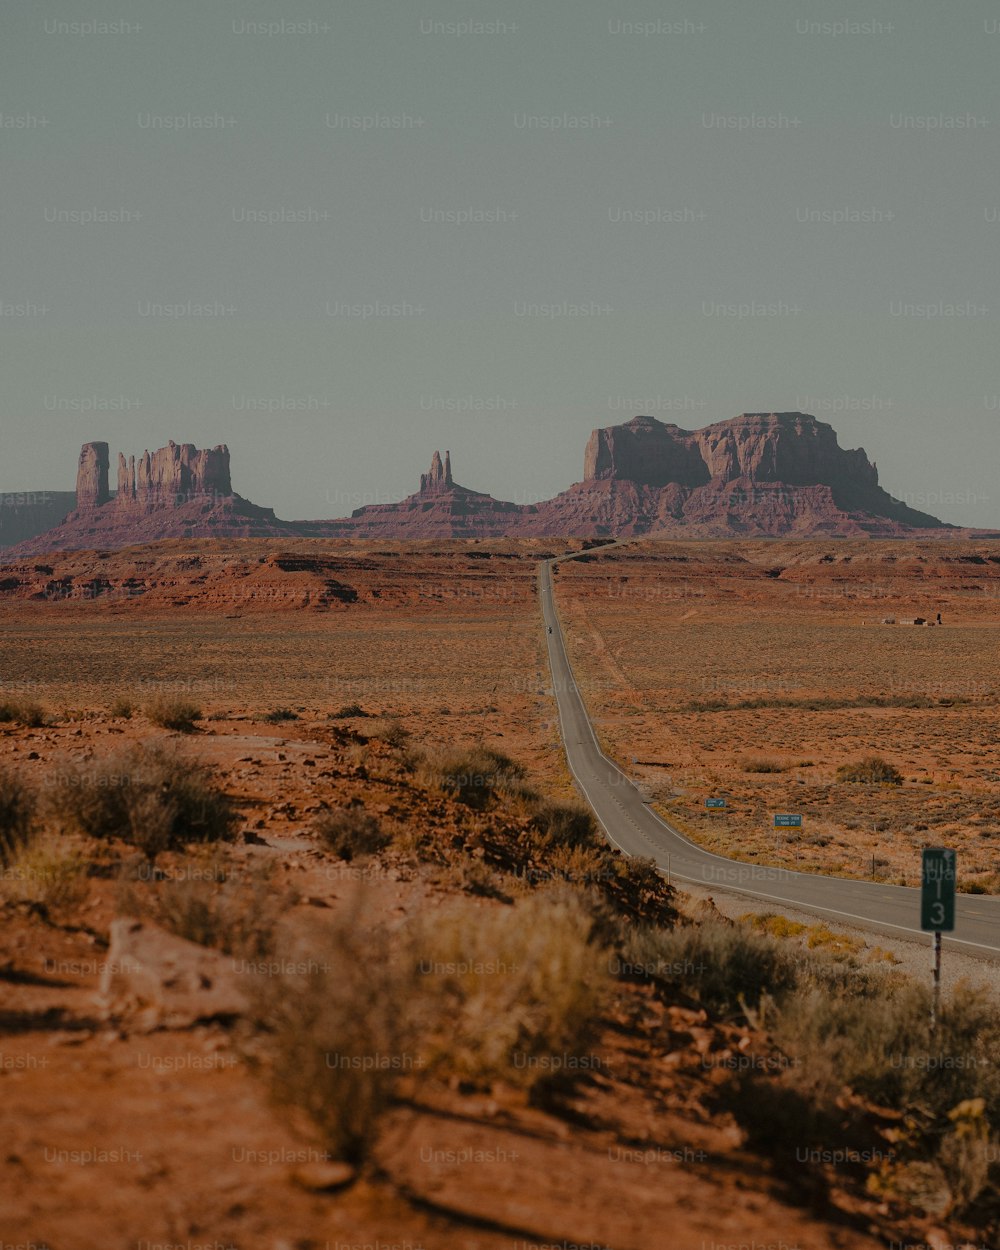 Una strada in mezzo a un deserto con le montagne sullo sfondo